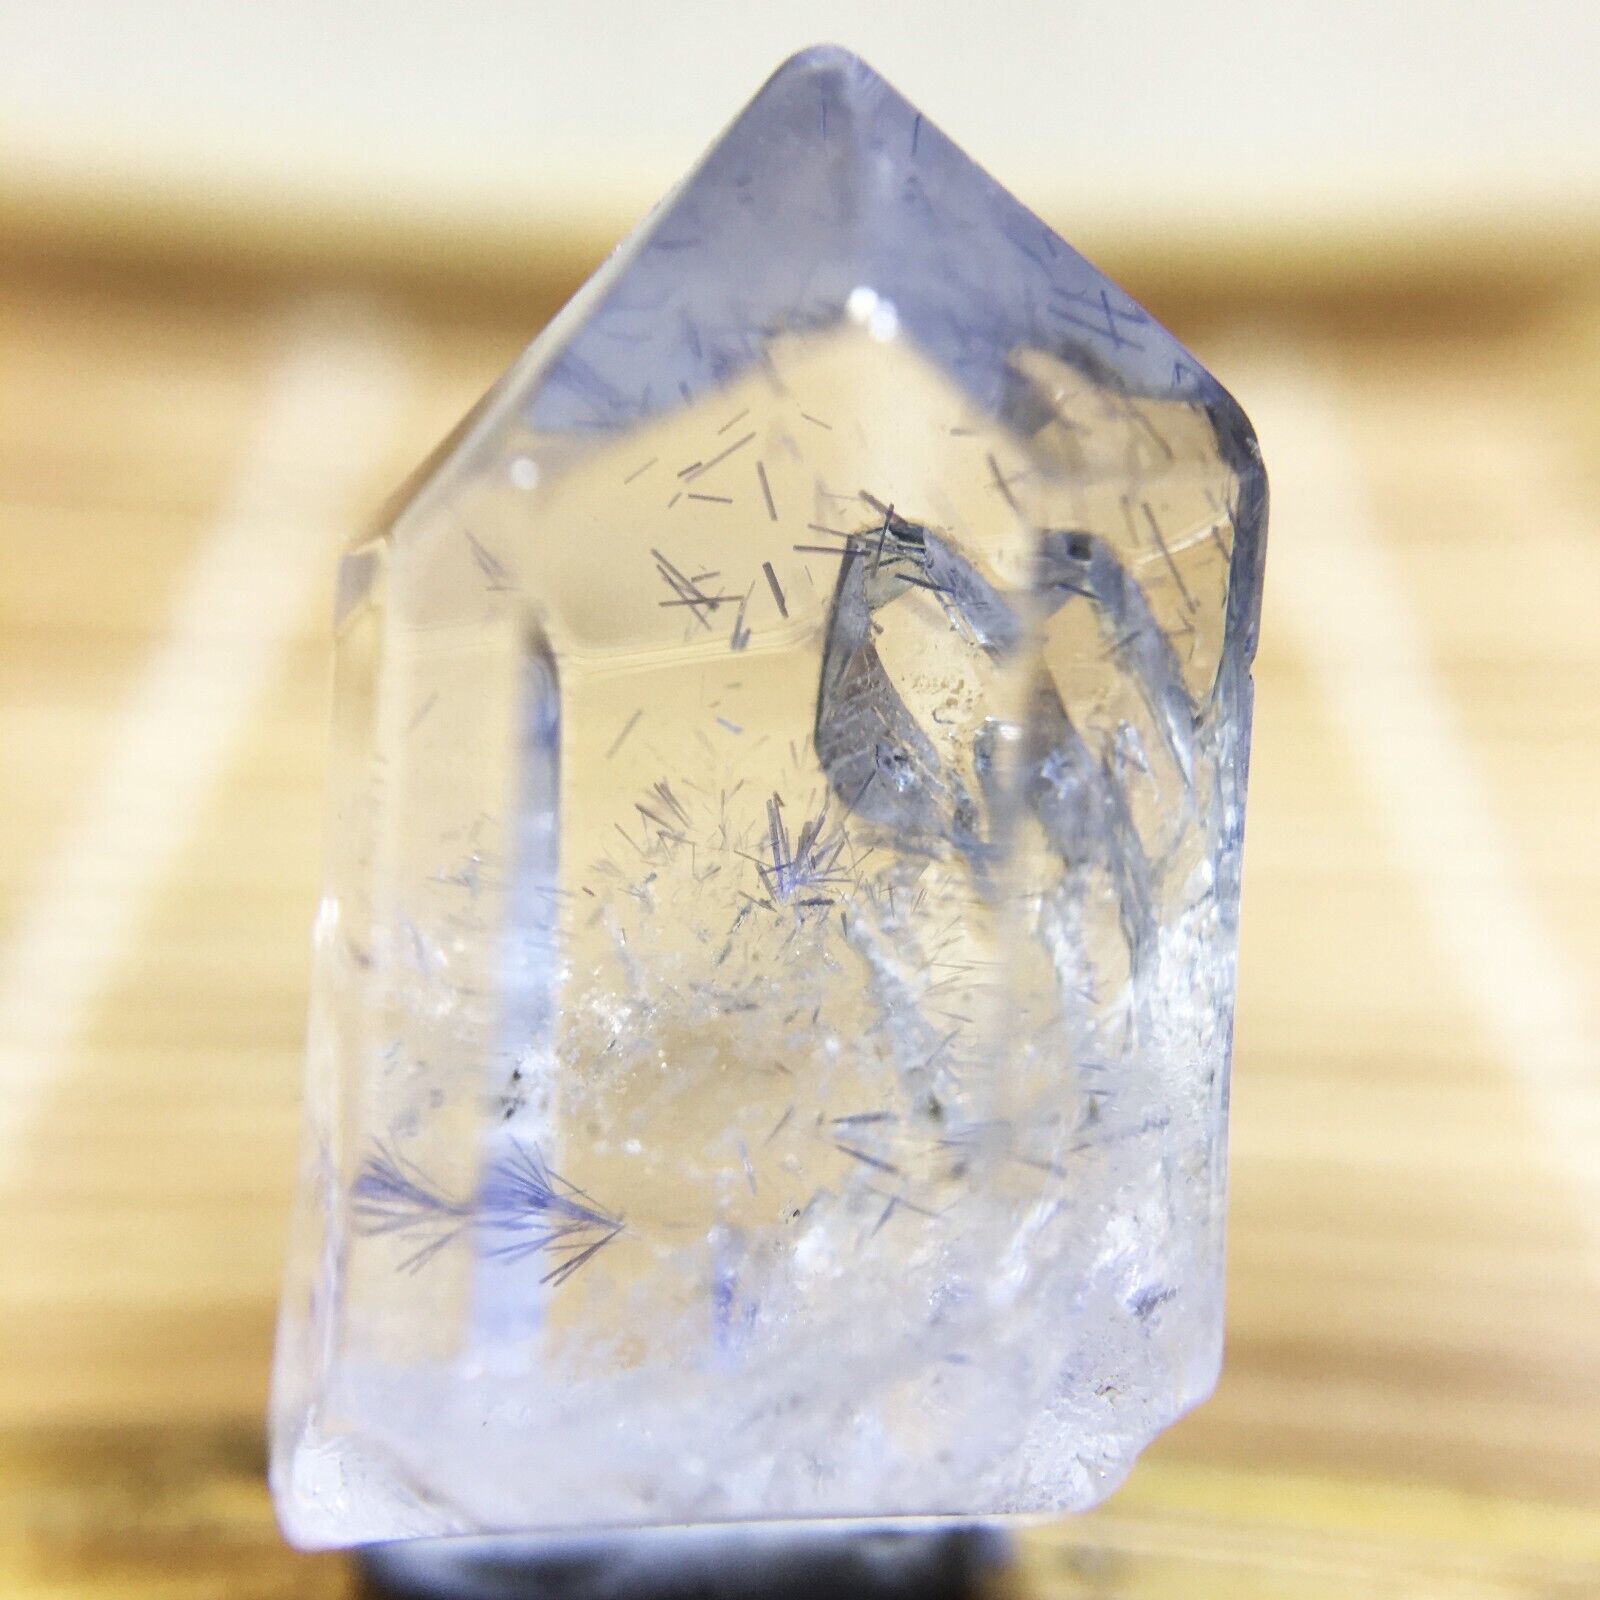 15.5Ct Very Rare NATURAL Beautiful Blue Dumortierite Quartz Crystal Specimen